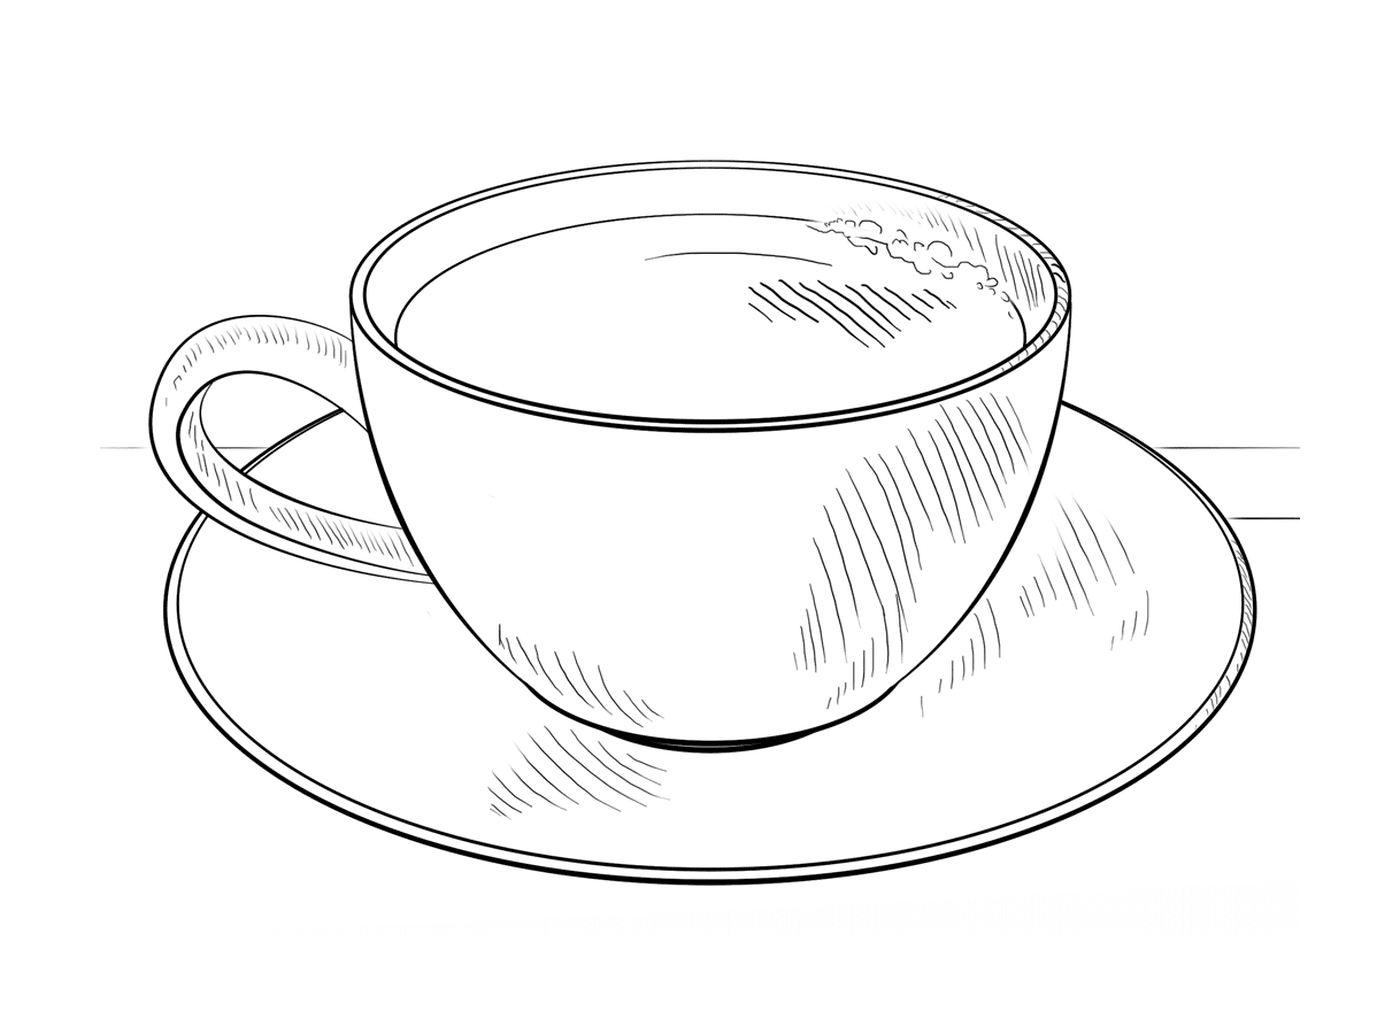  القهوة: كابتشينو، حليب، قهوة، قهوة 